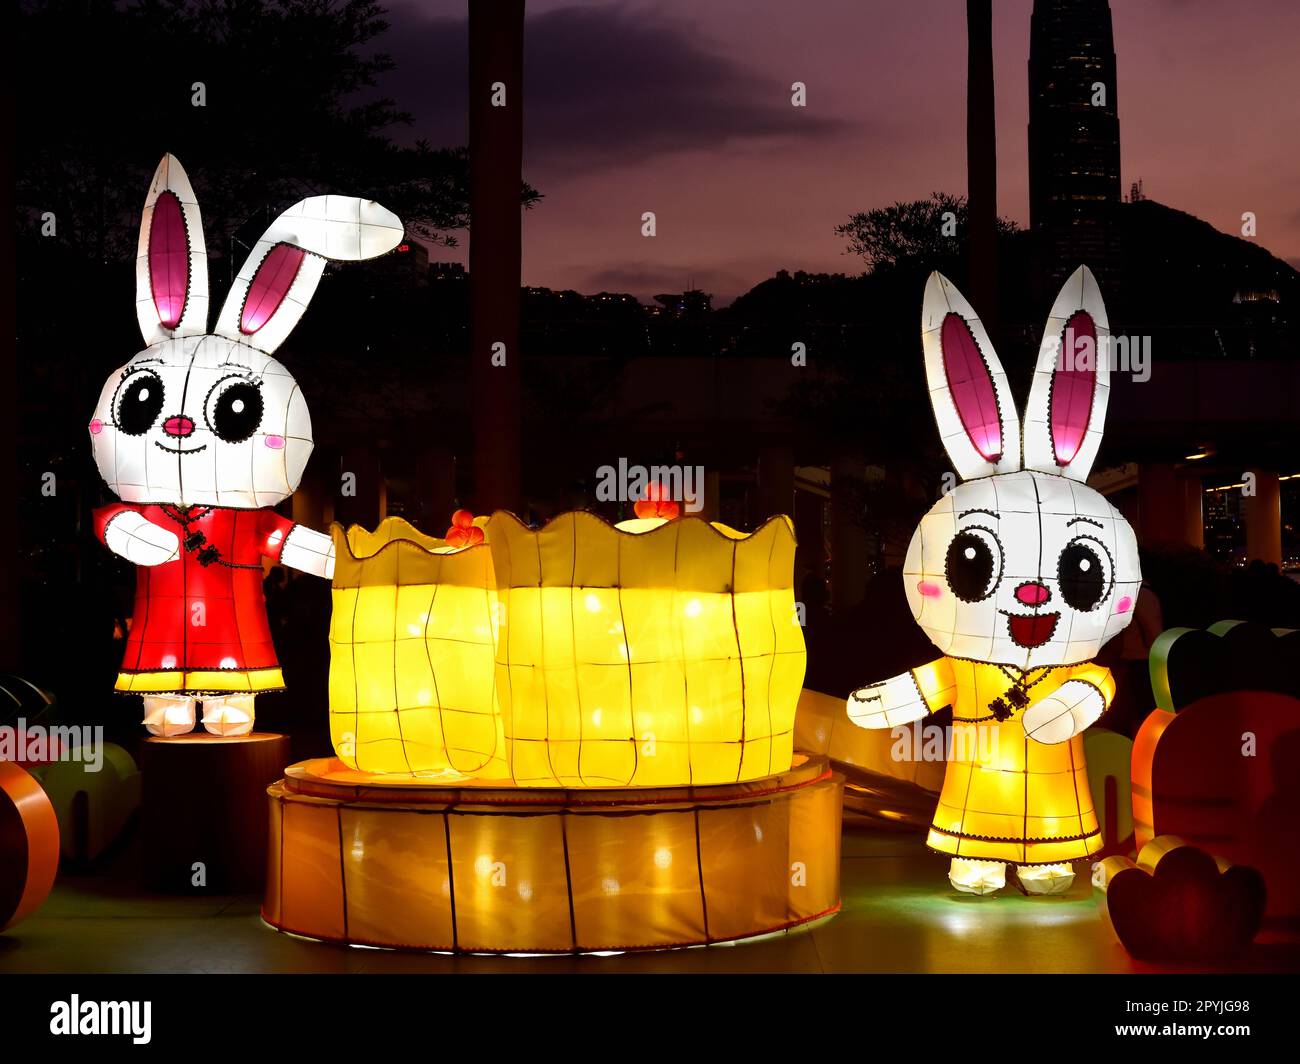 Lanternes de lapin jumelles pour la fête du nouvel an chinois, à Hong Kong Banque D'Images